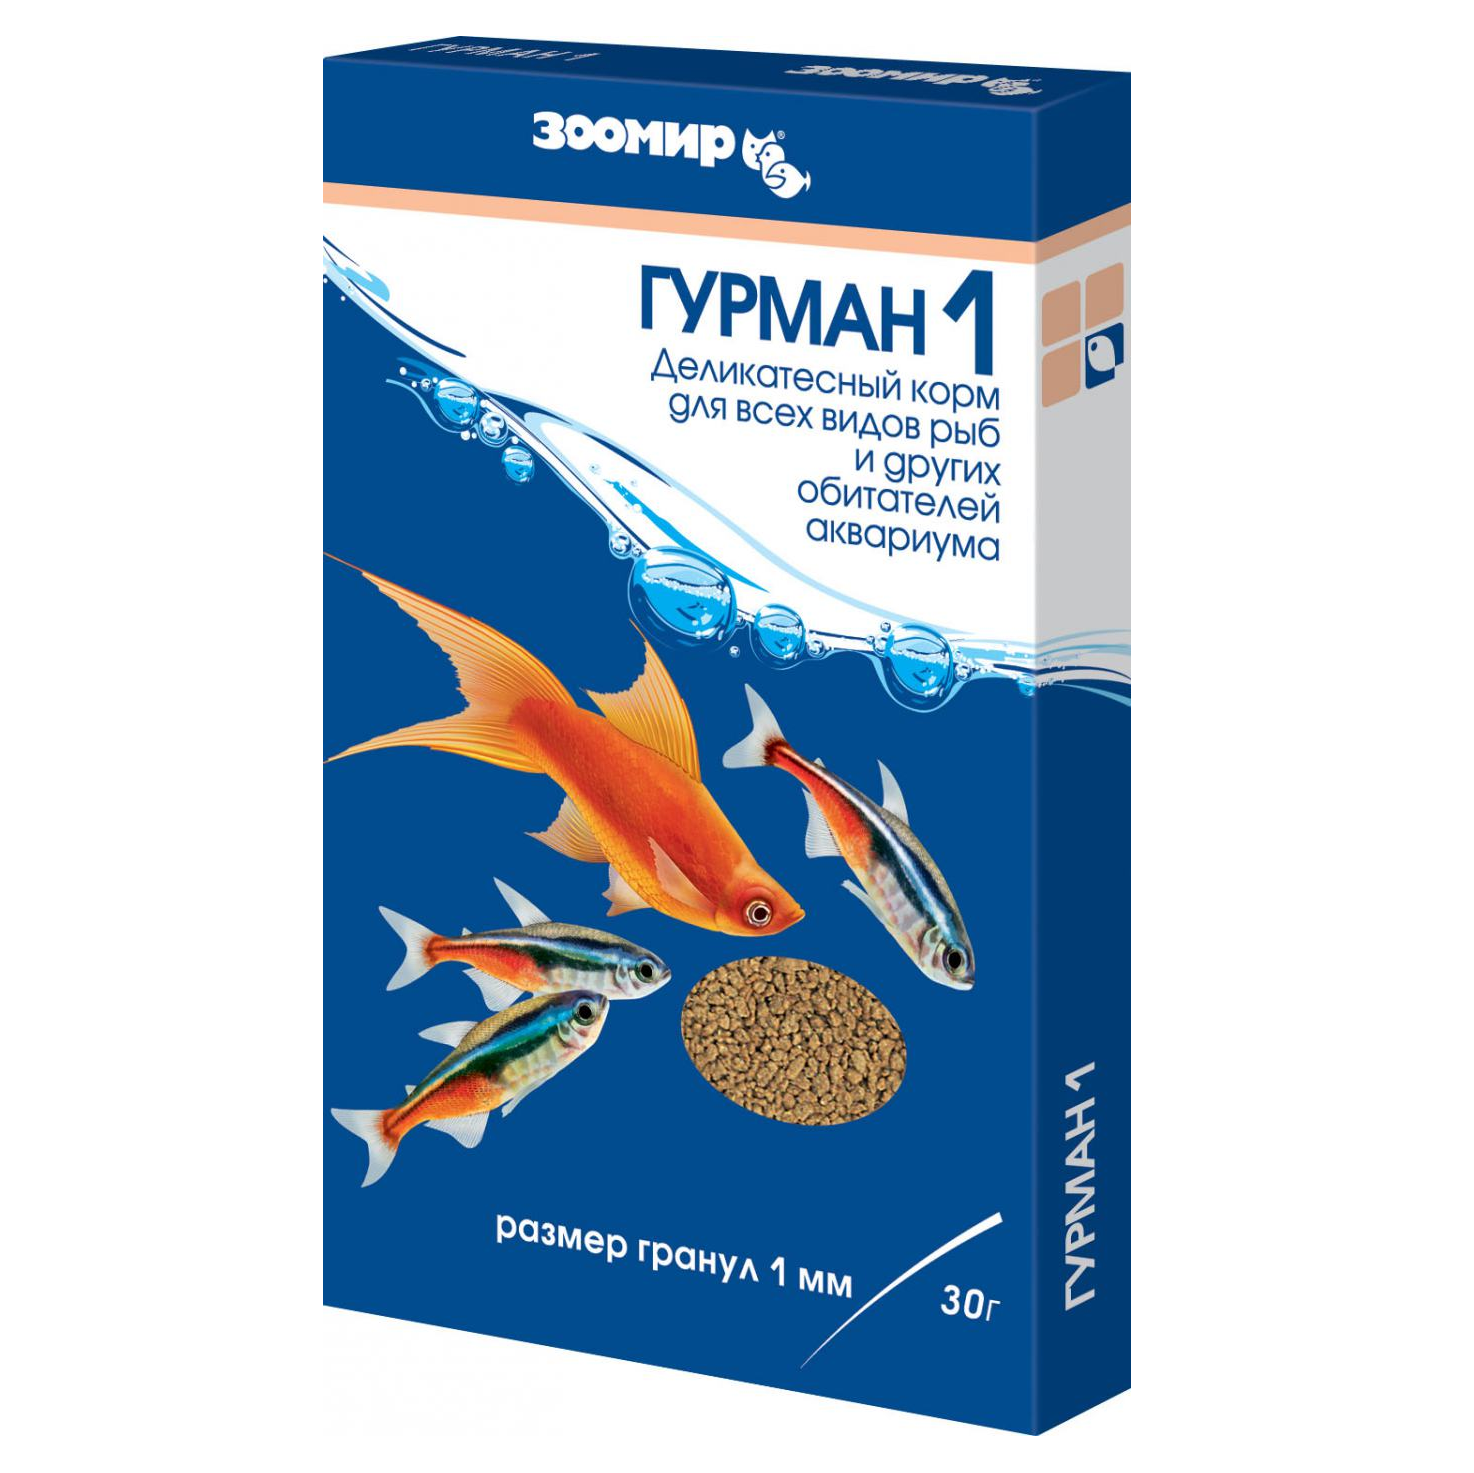 ЗООМИР Гурман - 1 мм 30г, б/п (гранулы) купить в Новосибирске